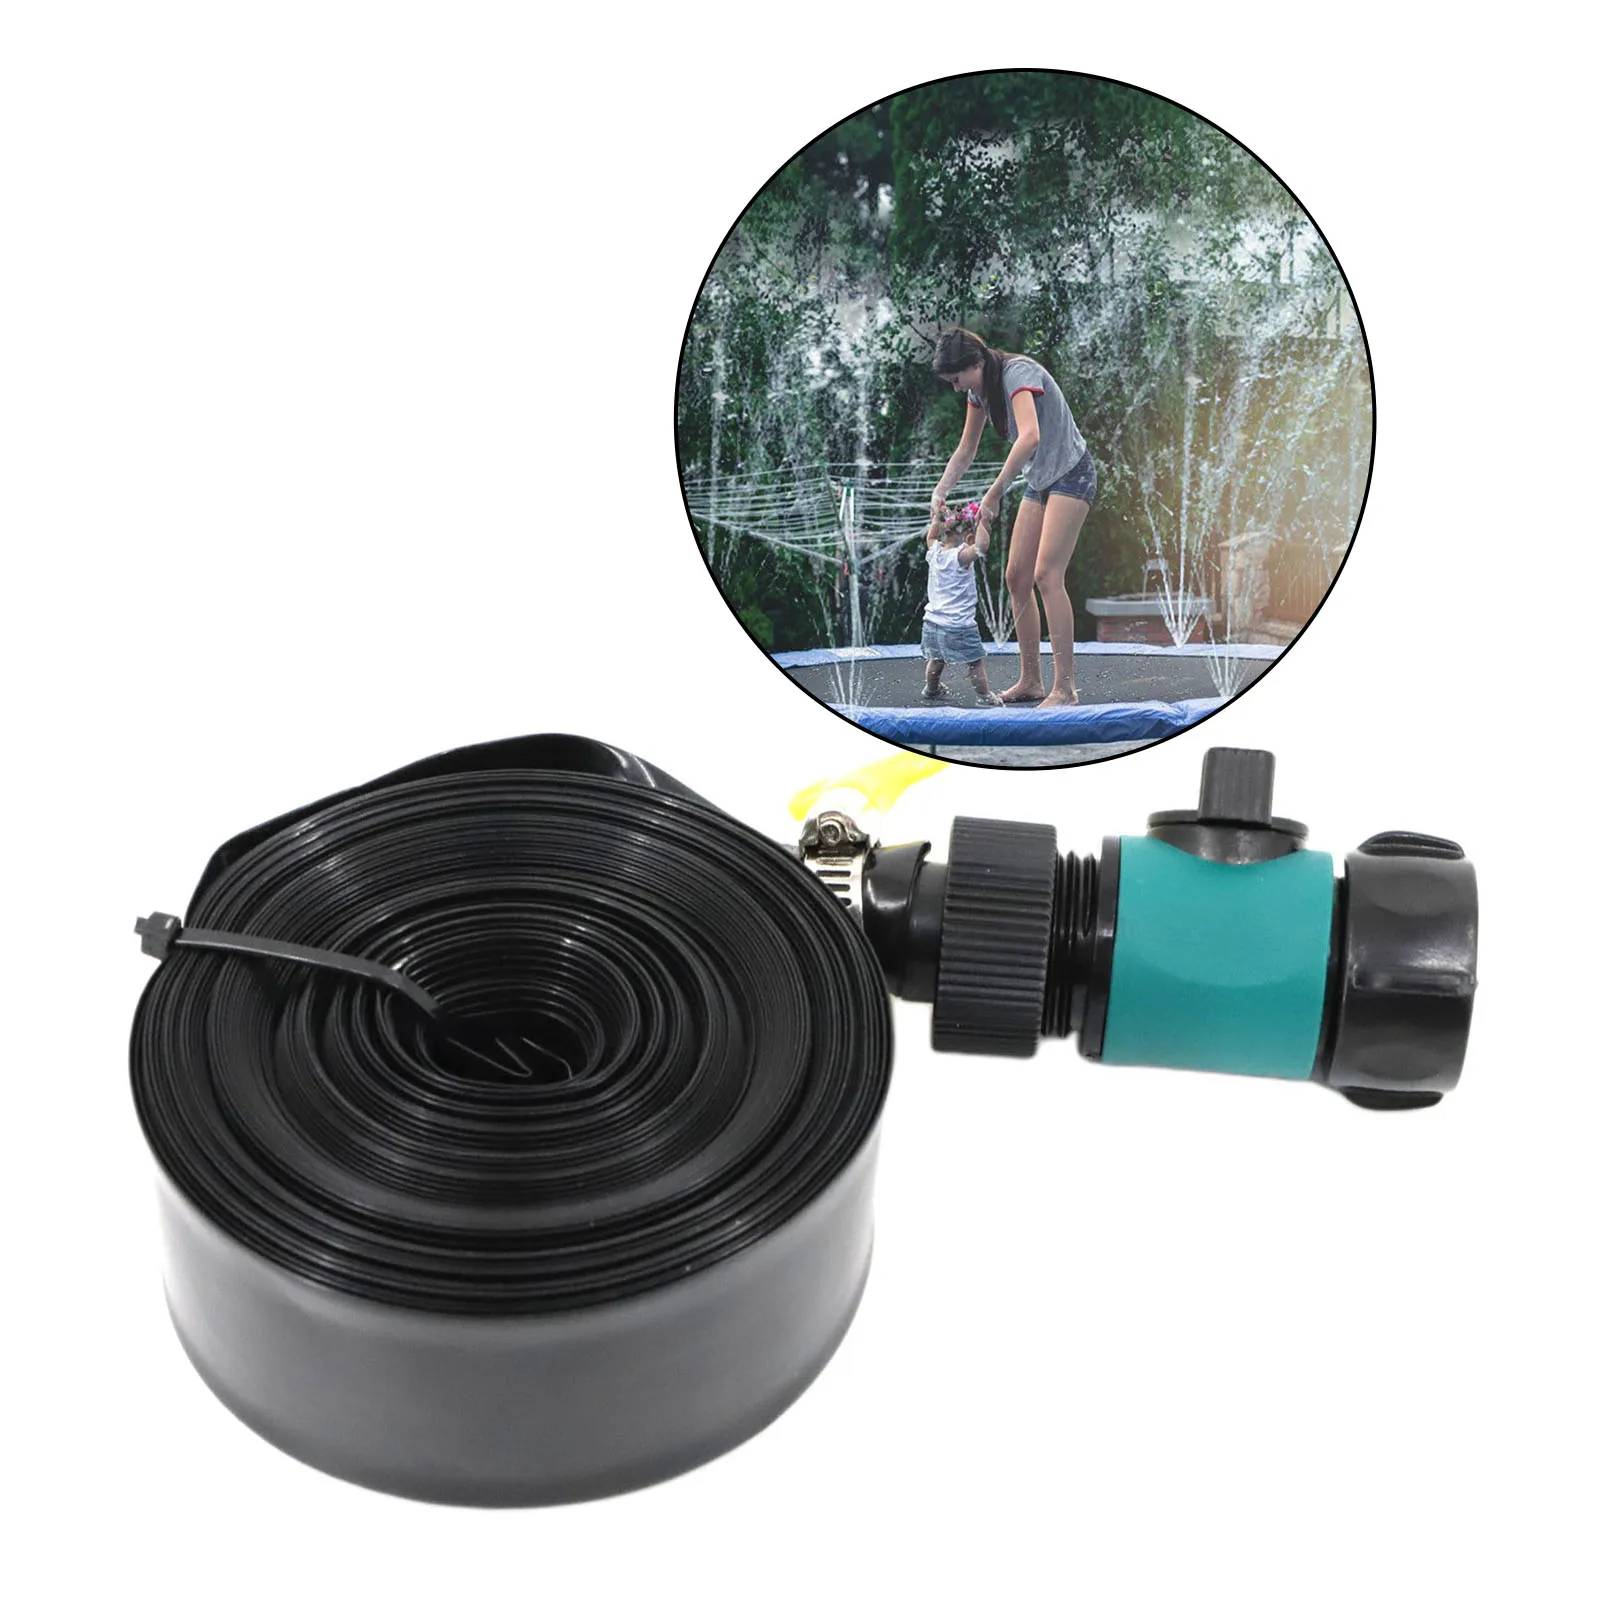 Trampoline Water Sprinkler Hose Outdoor Garden Summer Water Games Sprayer Toy Trampoline Accessories